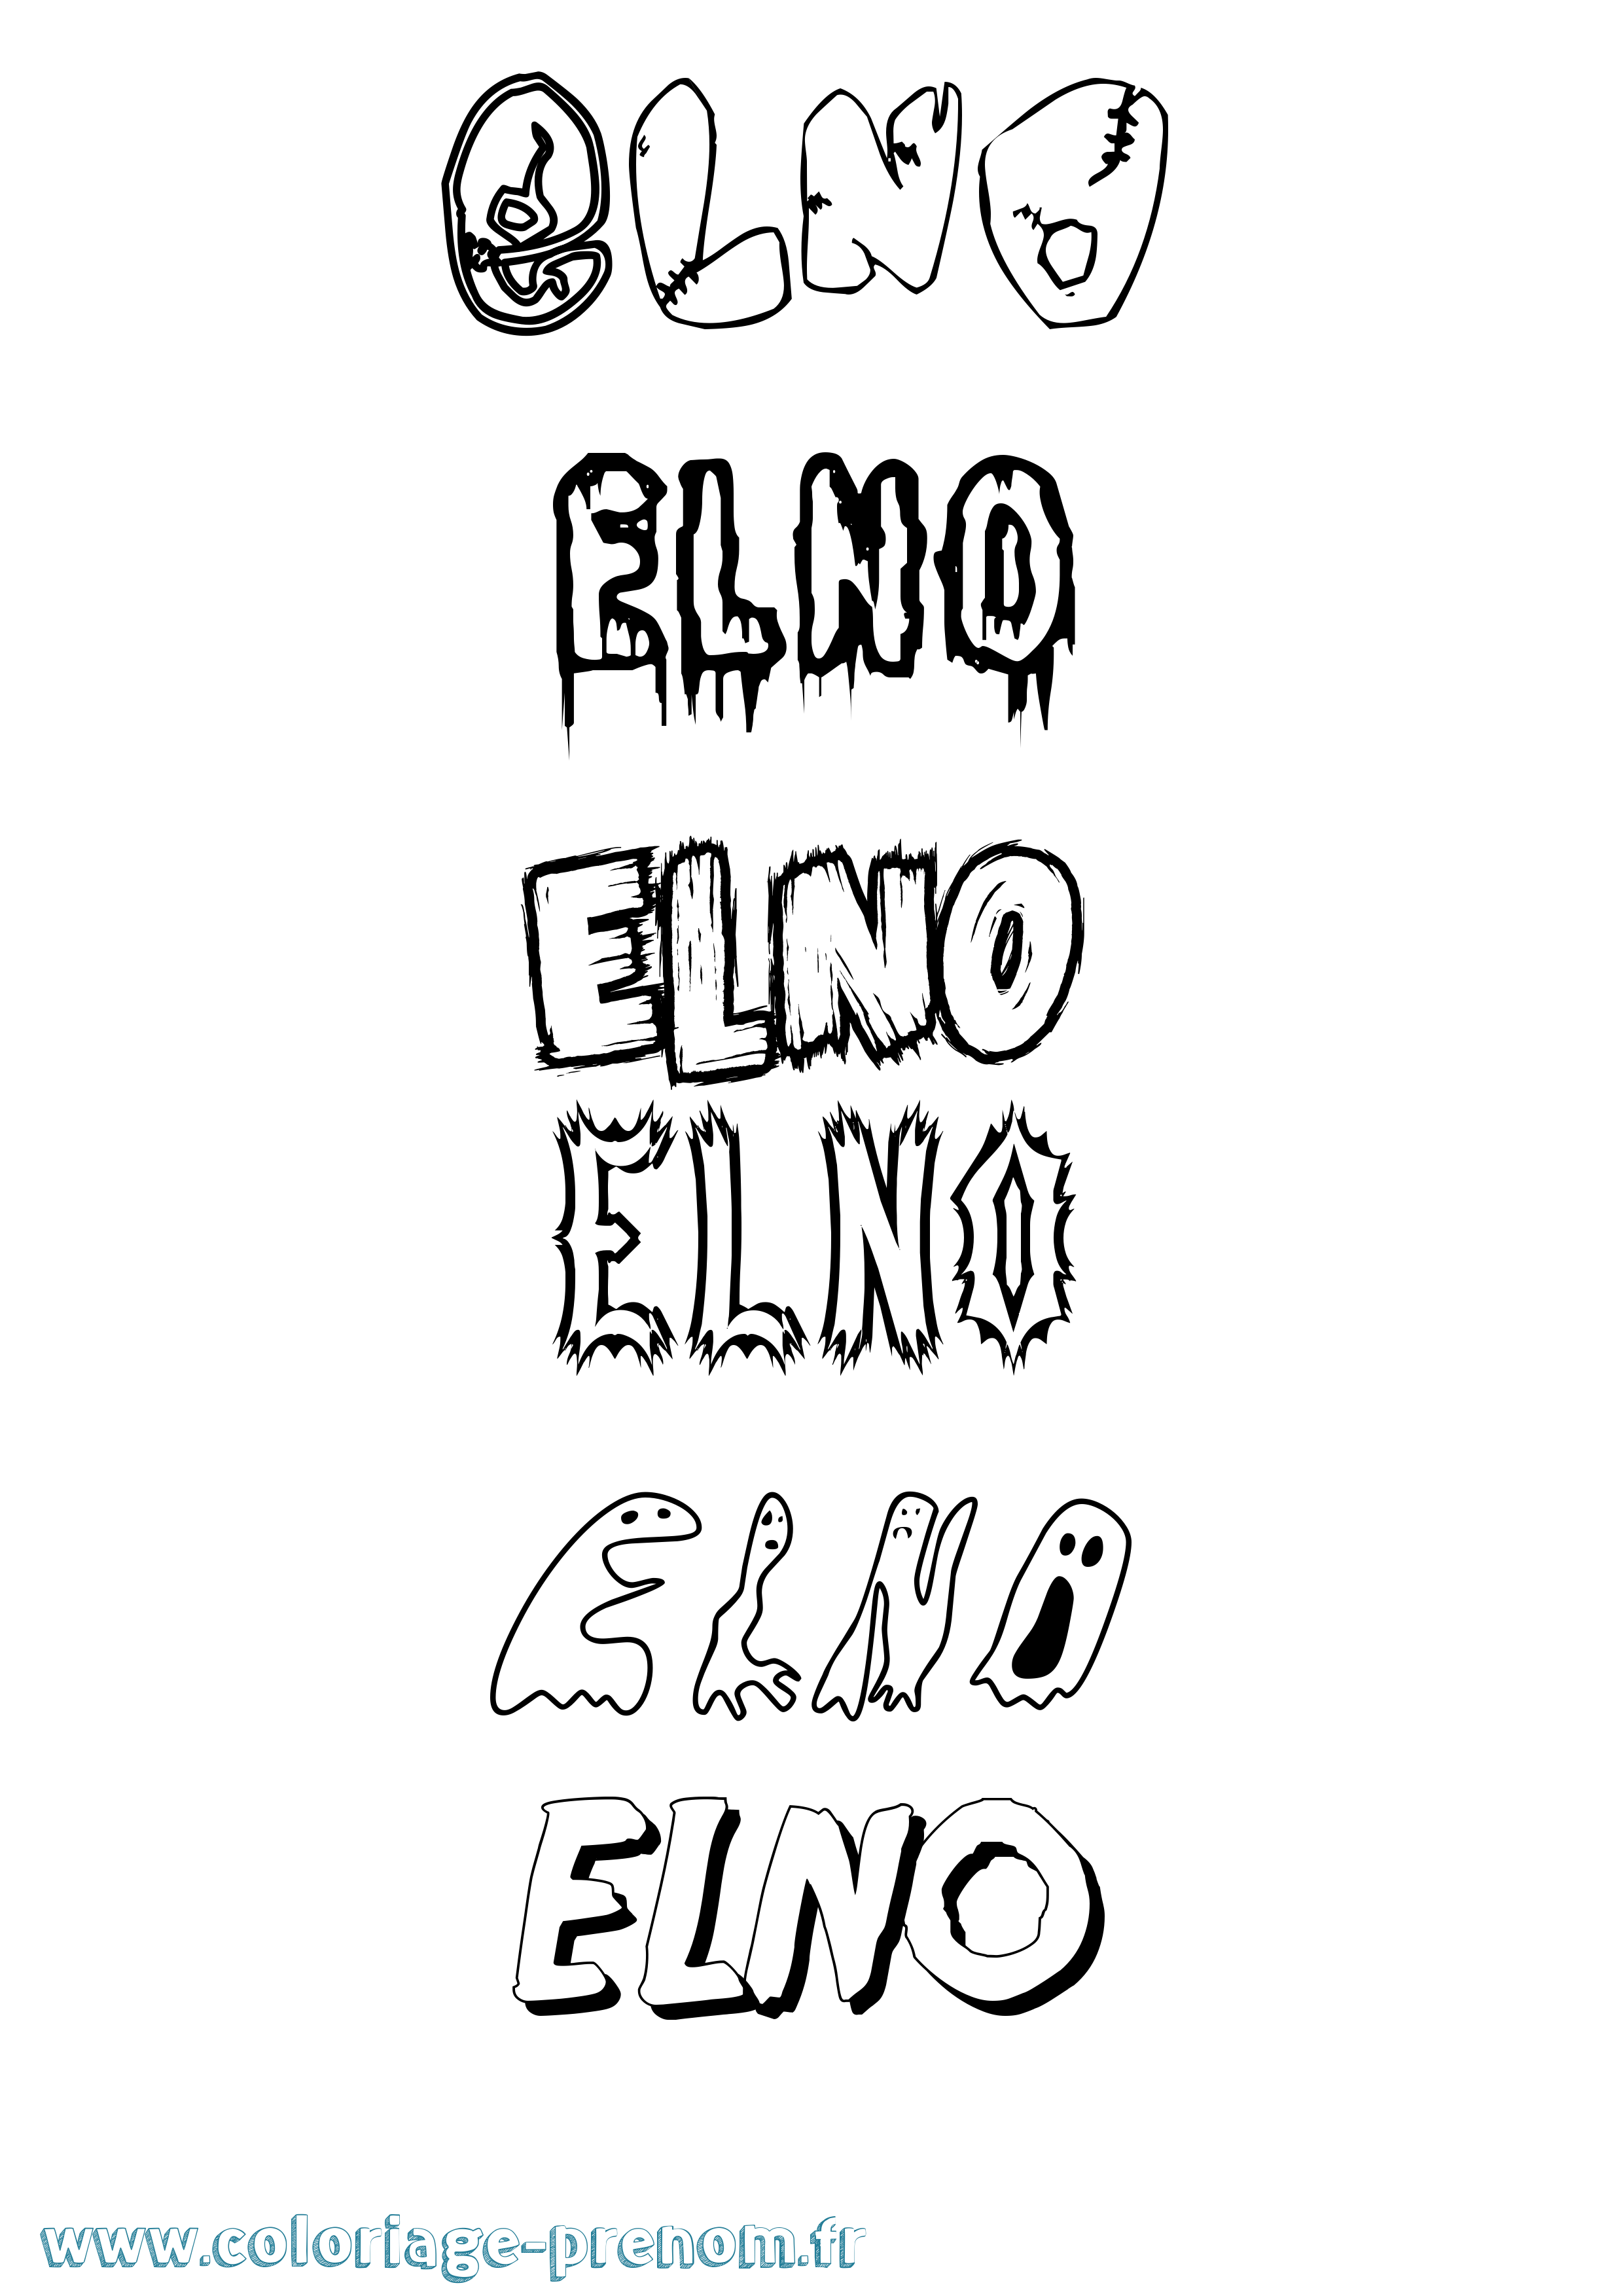 Coloriage prénom Elno Frisson